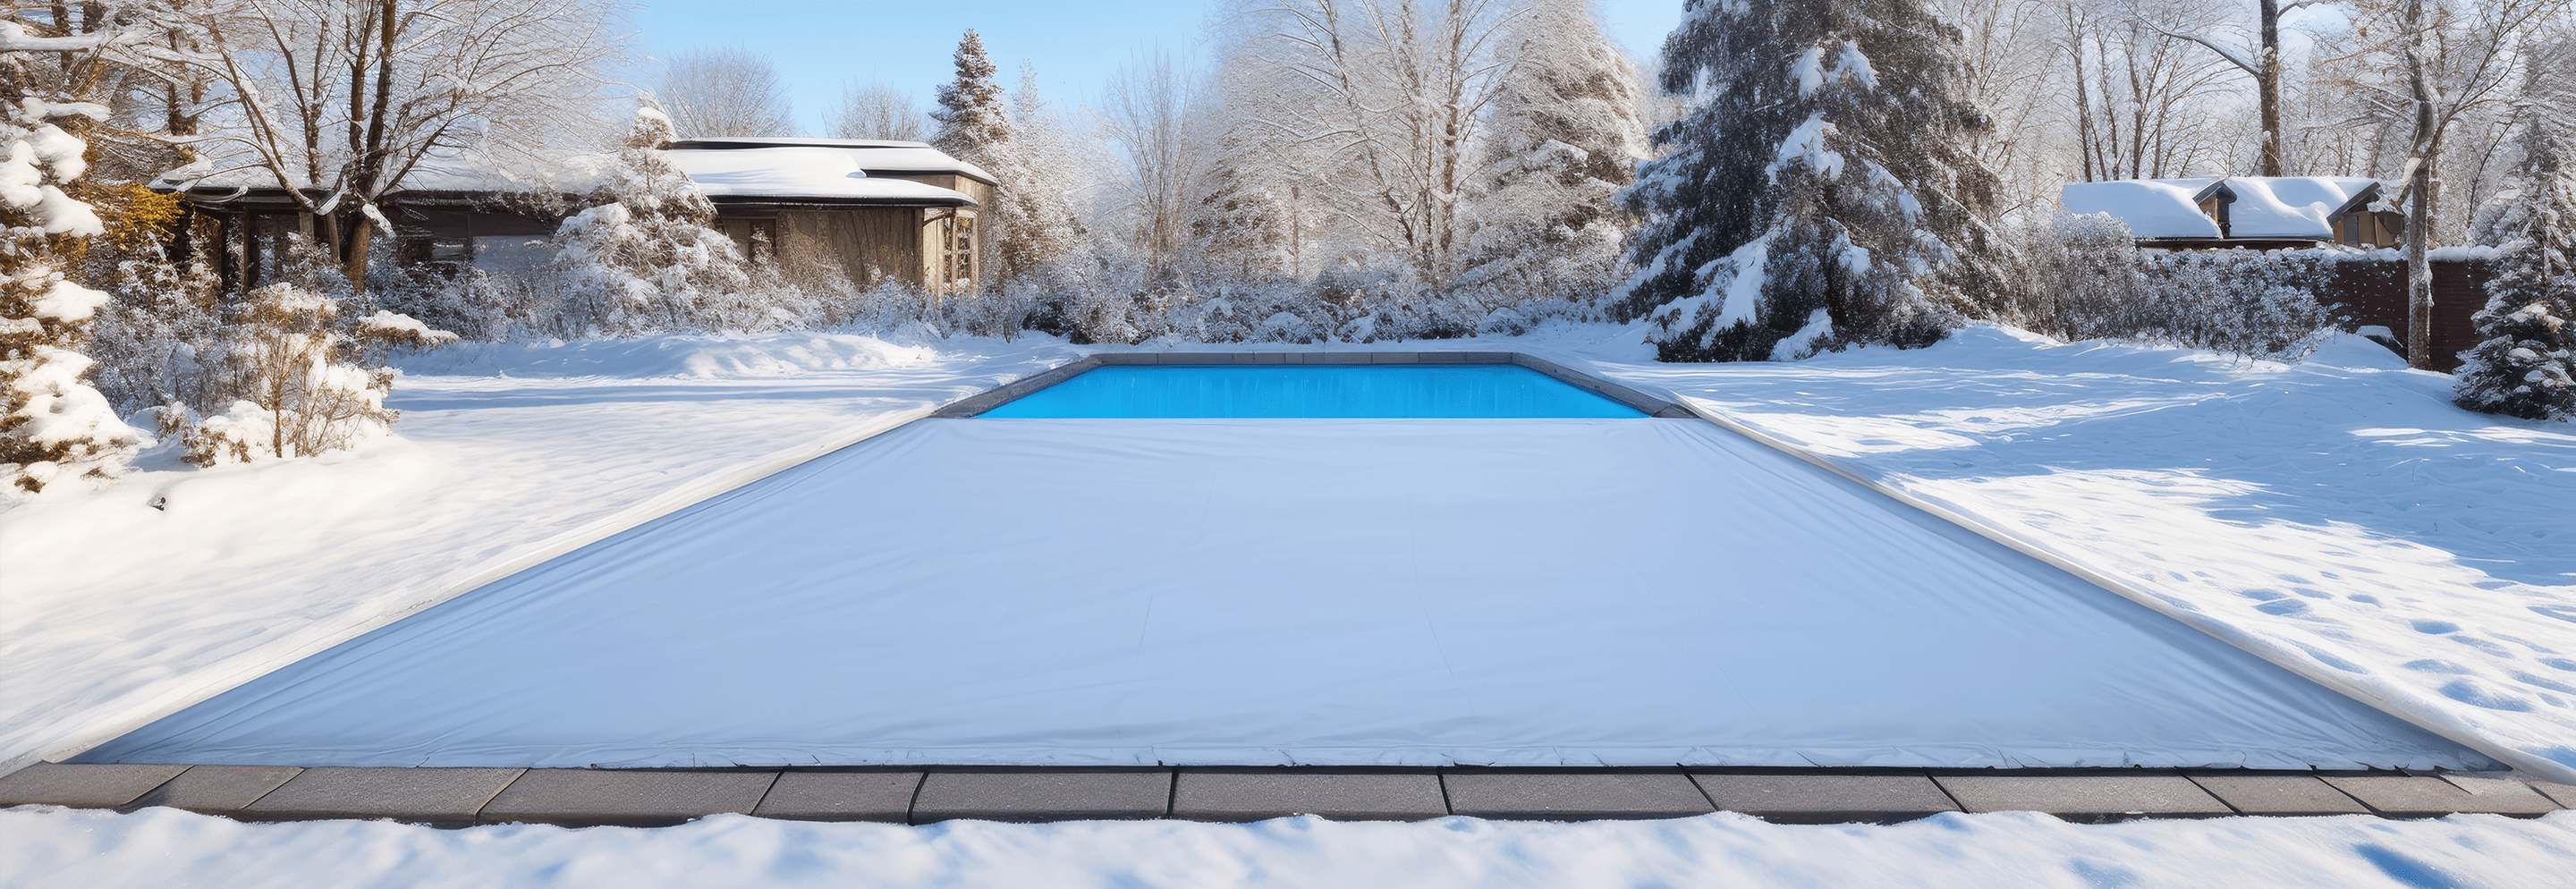 Prepárese para el clima más frío con nuestra lista de verificación de piscinas y spas de fin de temporada